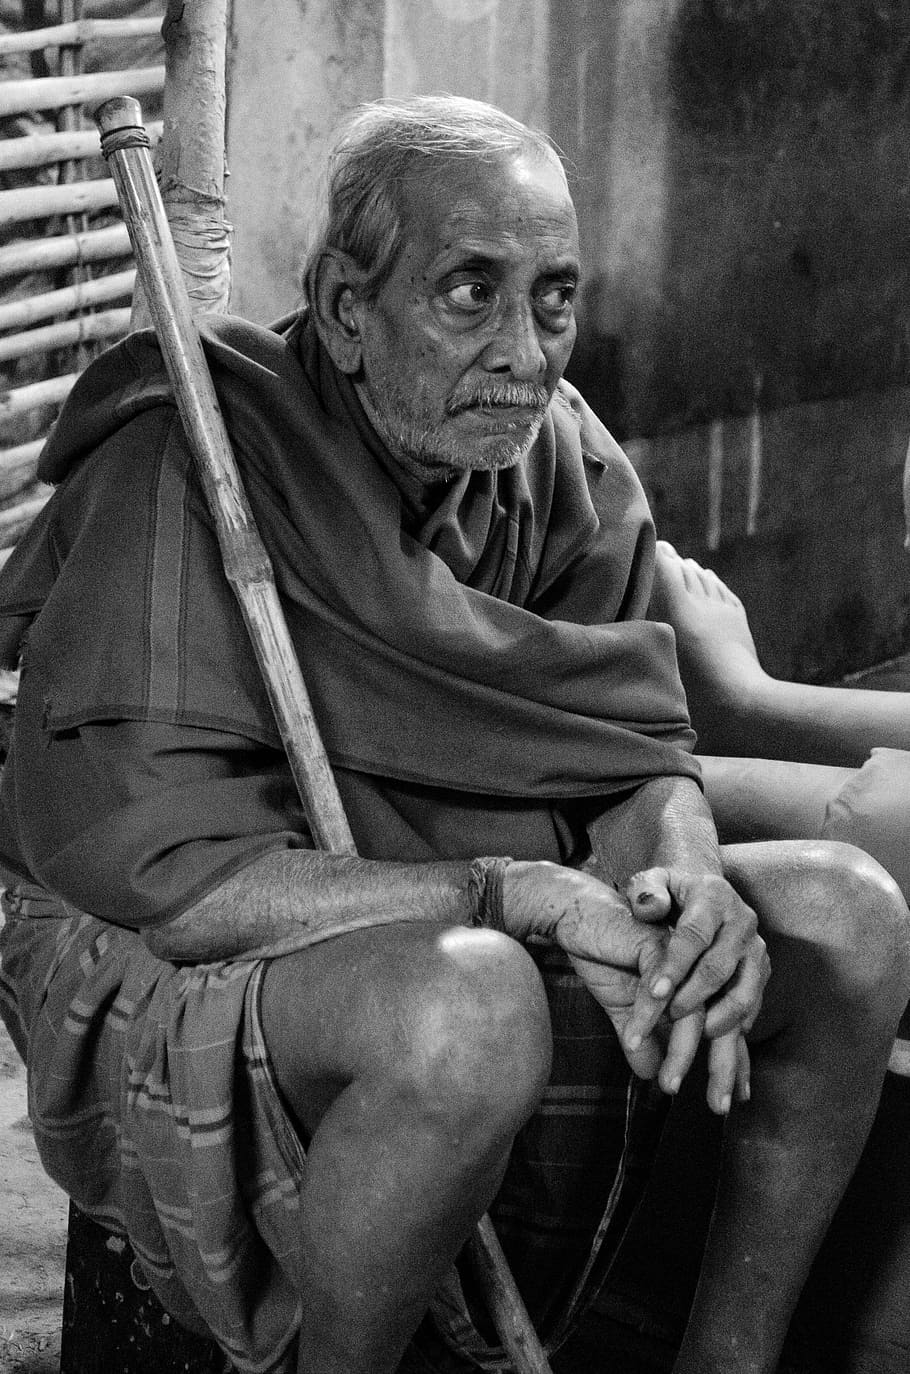 Índia, escala de cinza, potrait, adulto sênior, sentado, uma pessoa, homens idosos, adulto, homens, pessoas reais